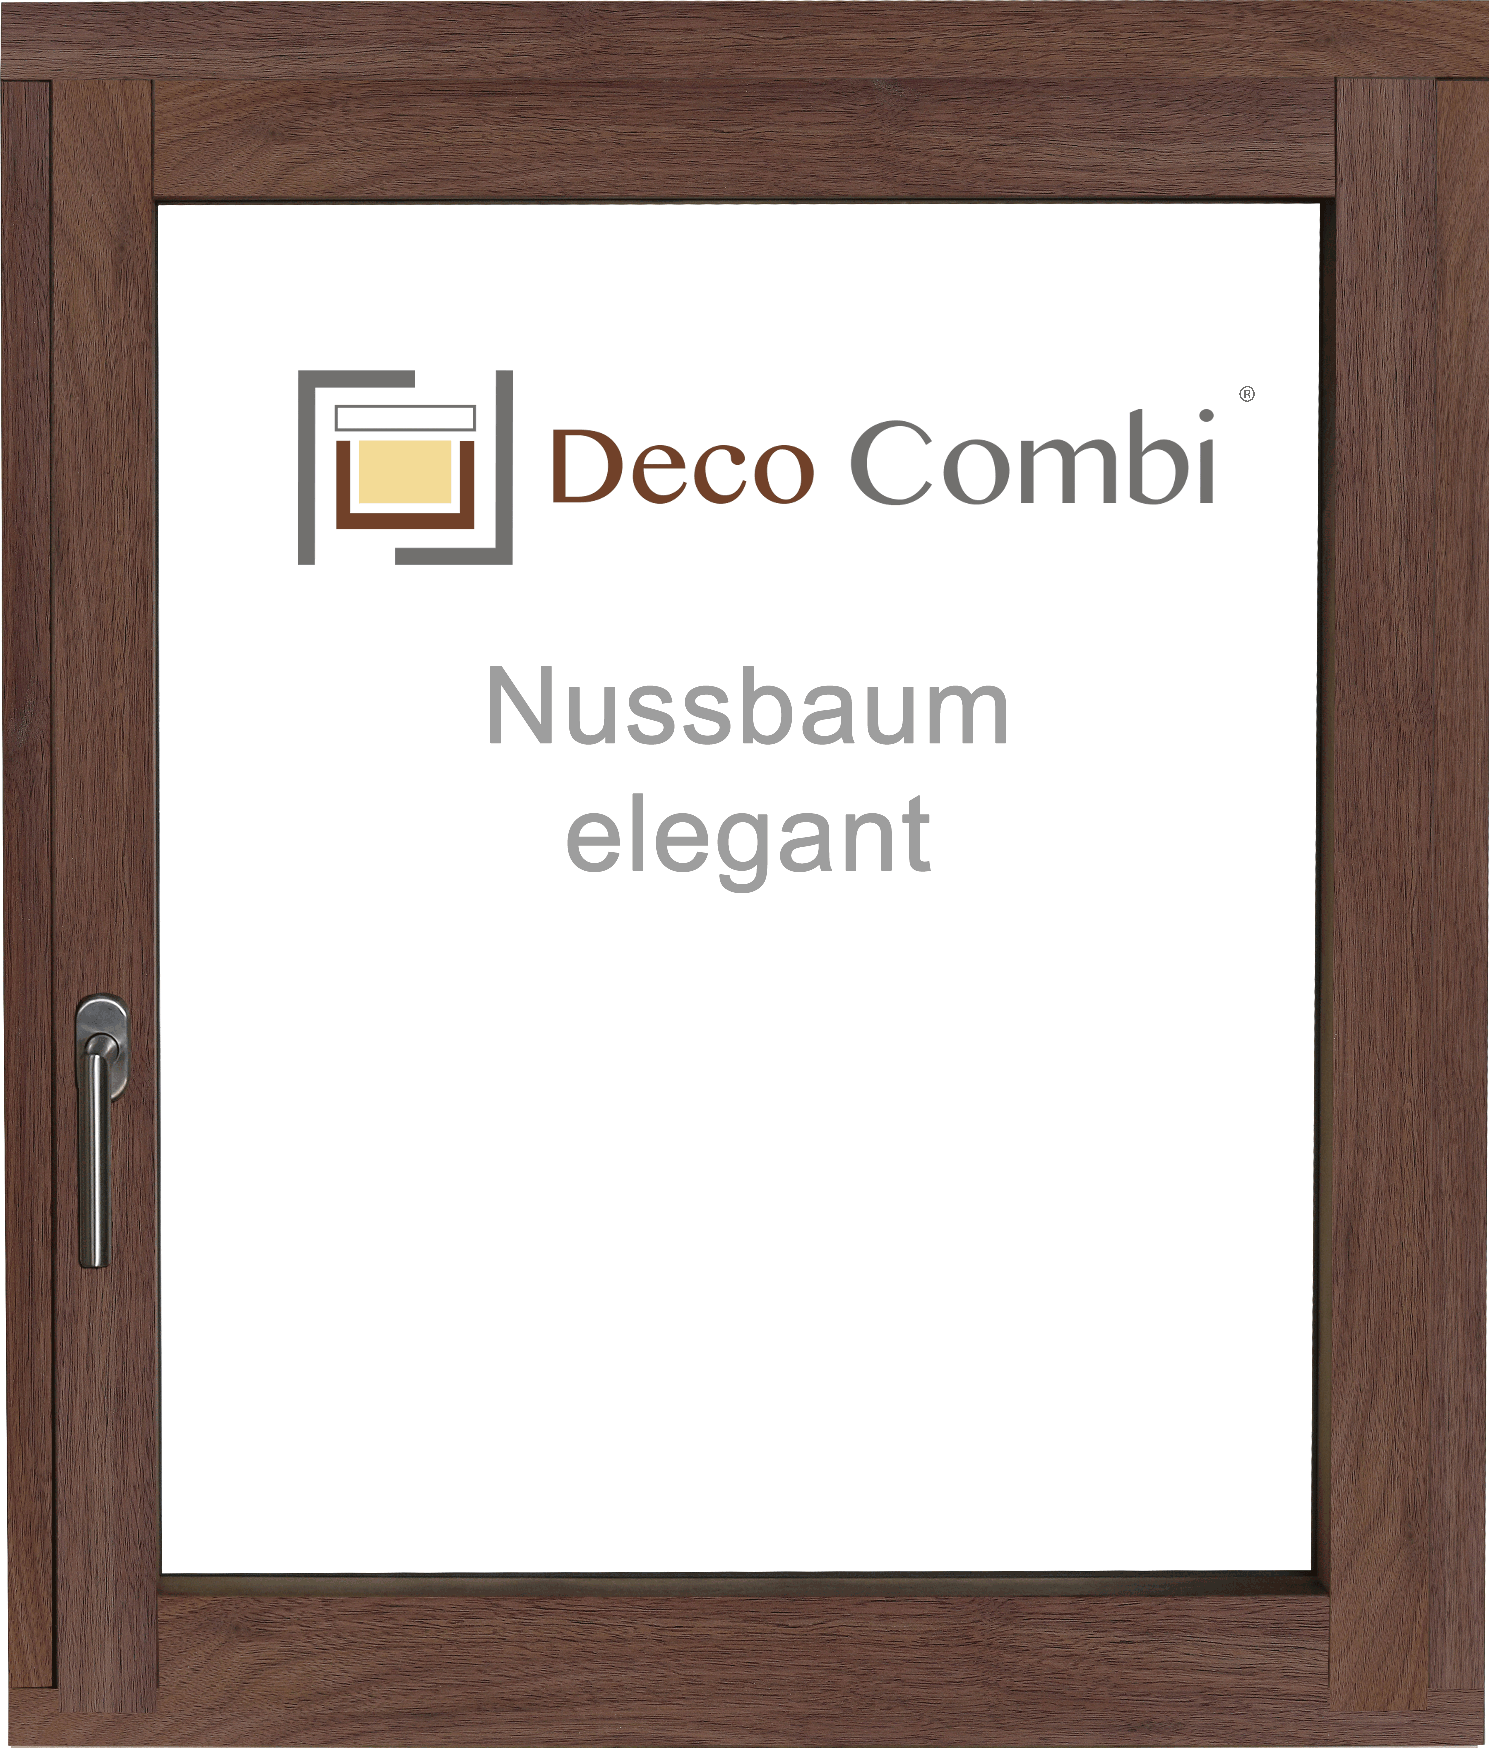 Nussbaum elegant